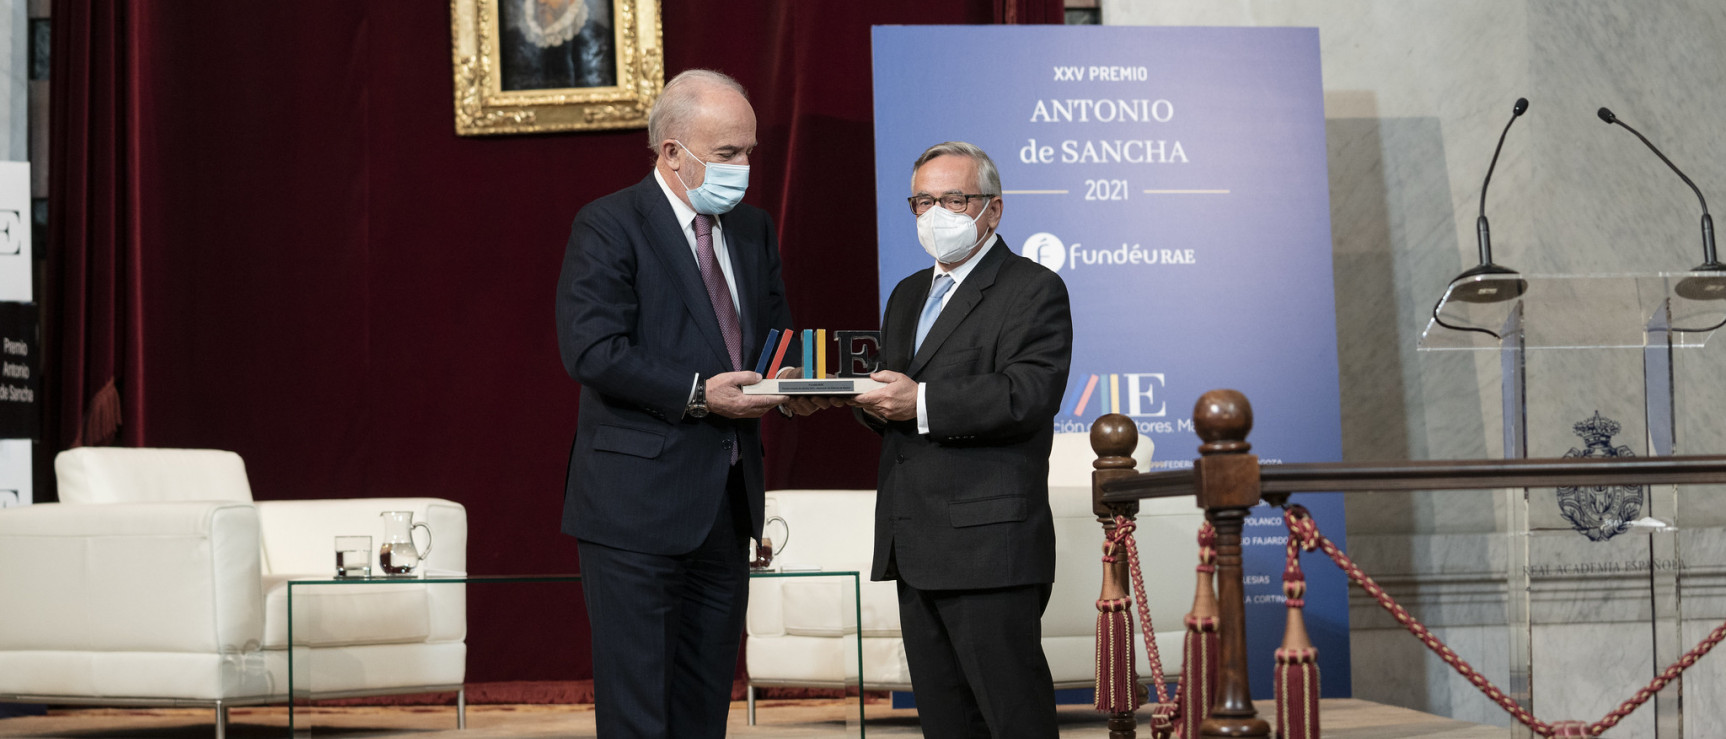 Santiago Muñoz Machado, presidente de FundéuRAE y director de la RAE, recibe en nombre de la fundación el Premio Antonio de Sancha, que concede anualmente la Asociación de Editores de Madrid (foto: RAE)